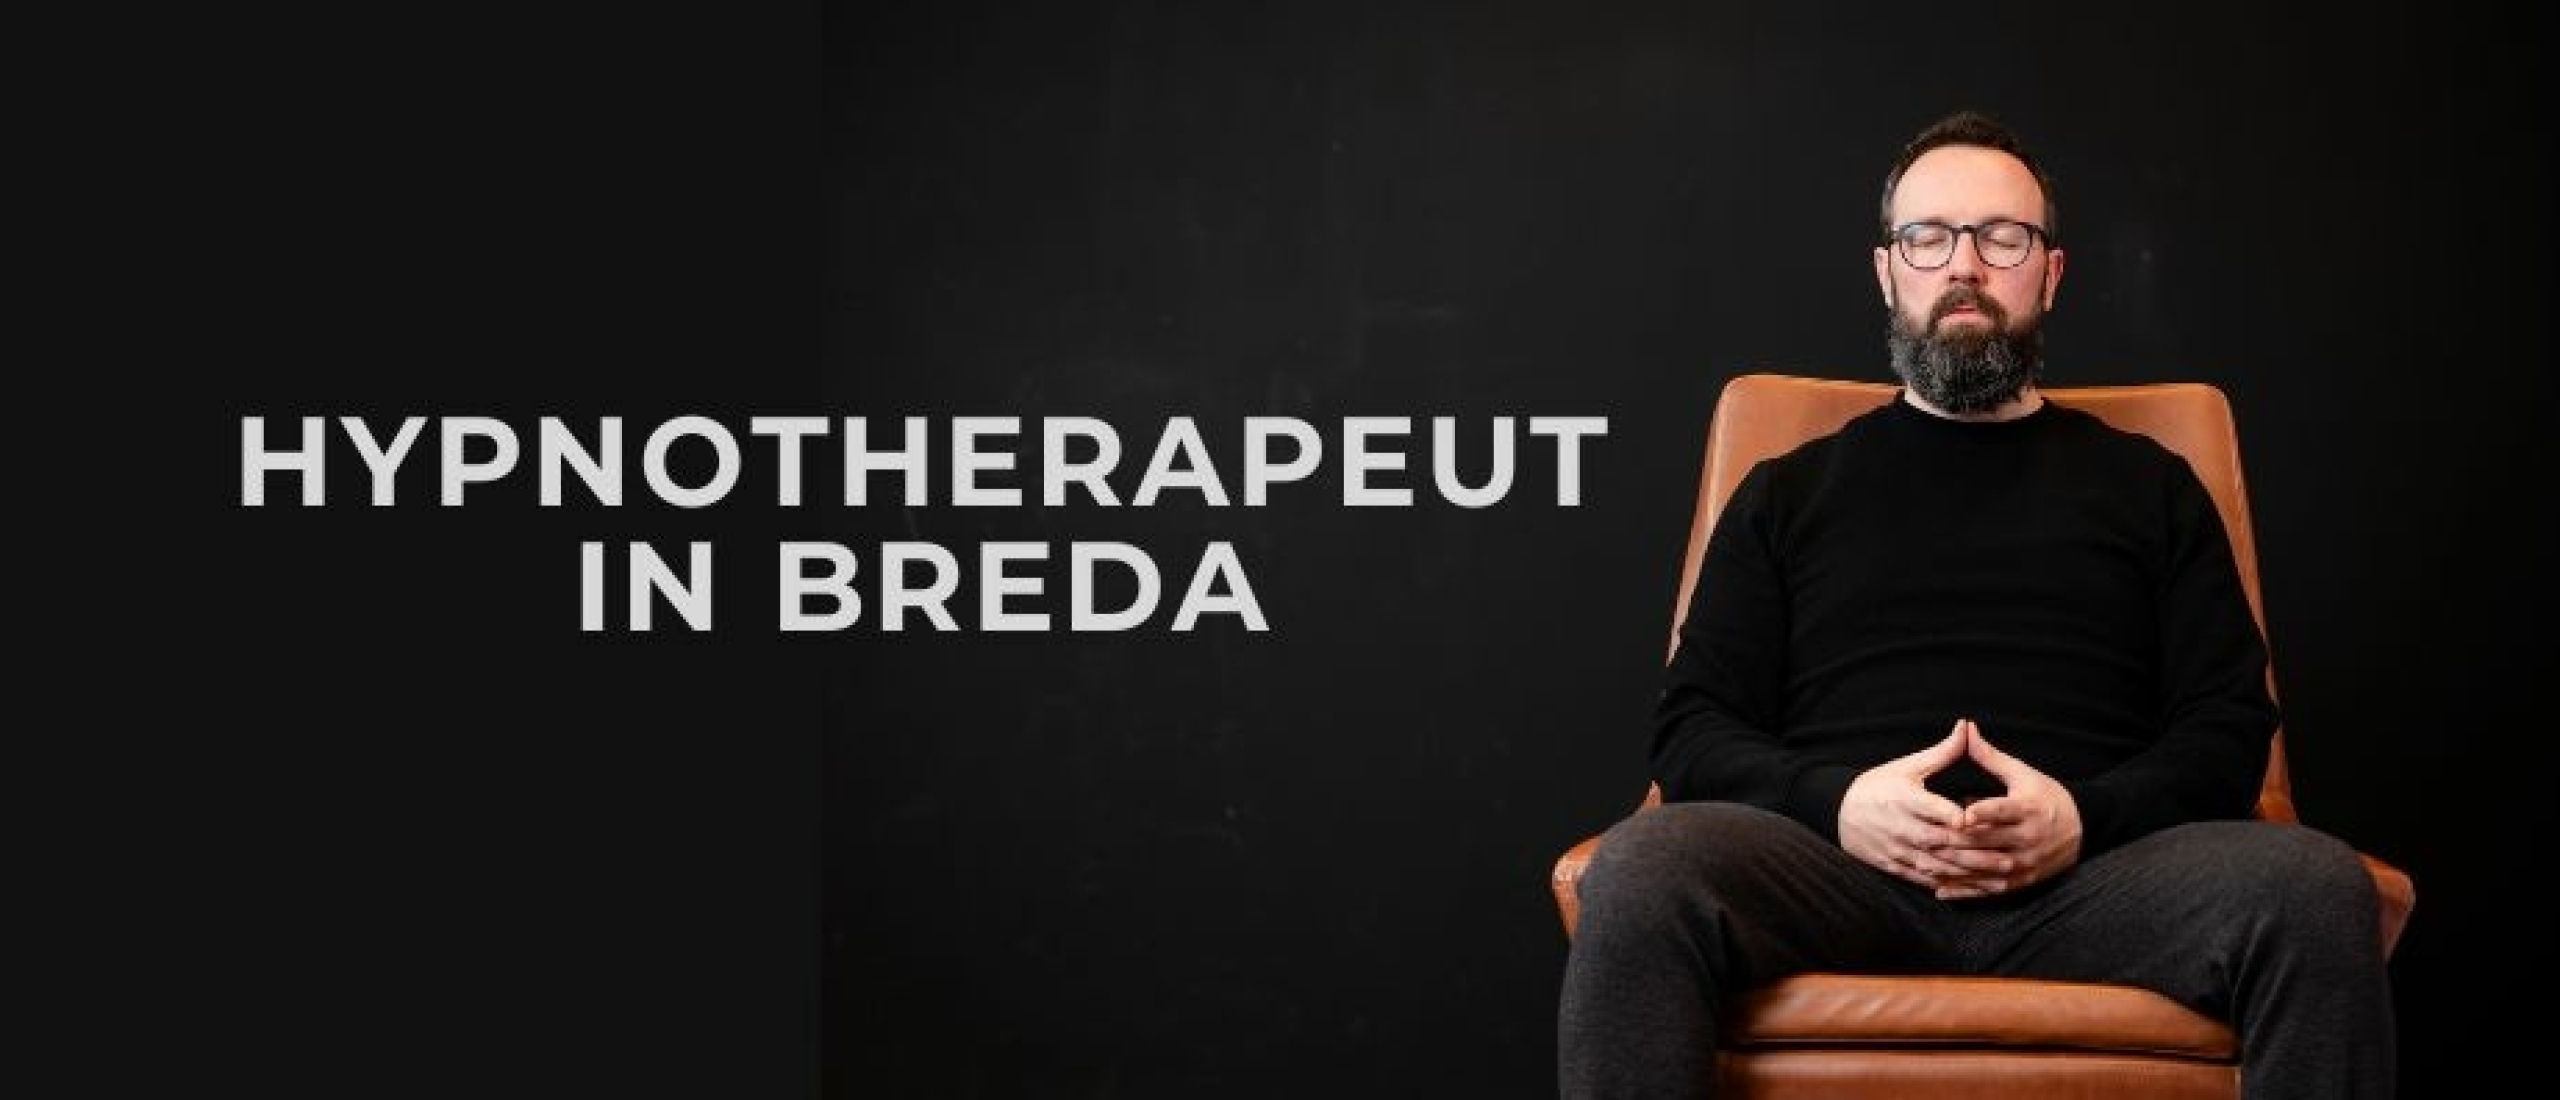 Een hypnotherapeut in Breda die jou kan helpen?